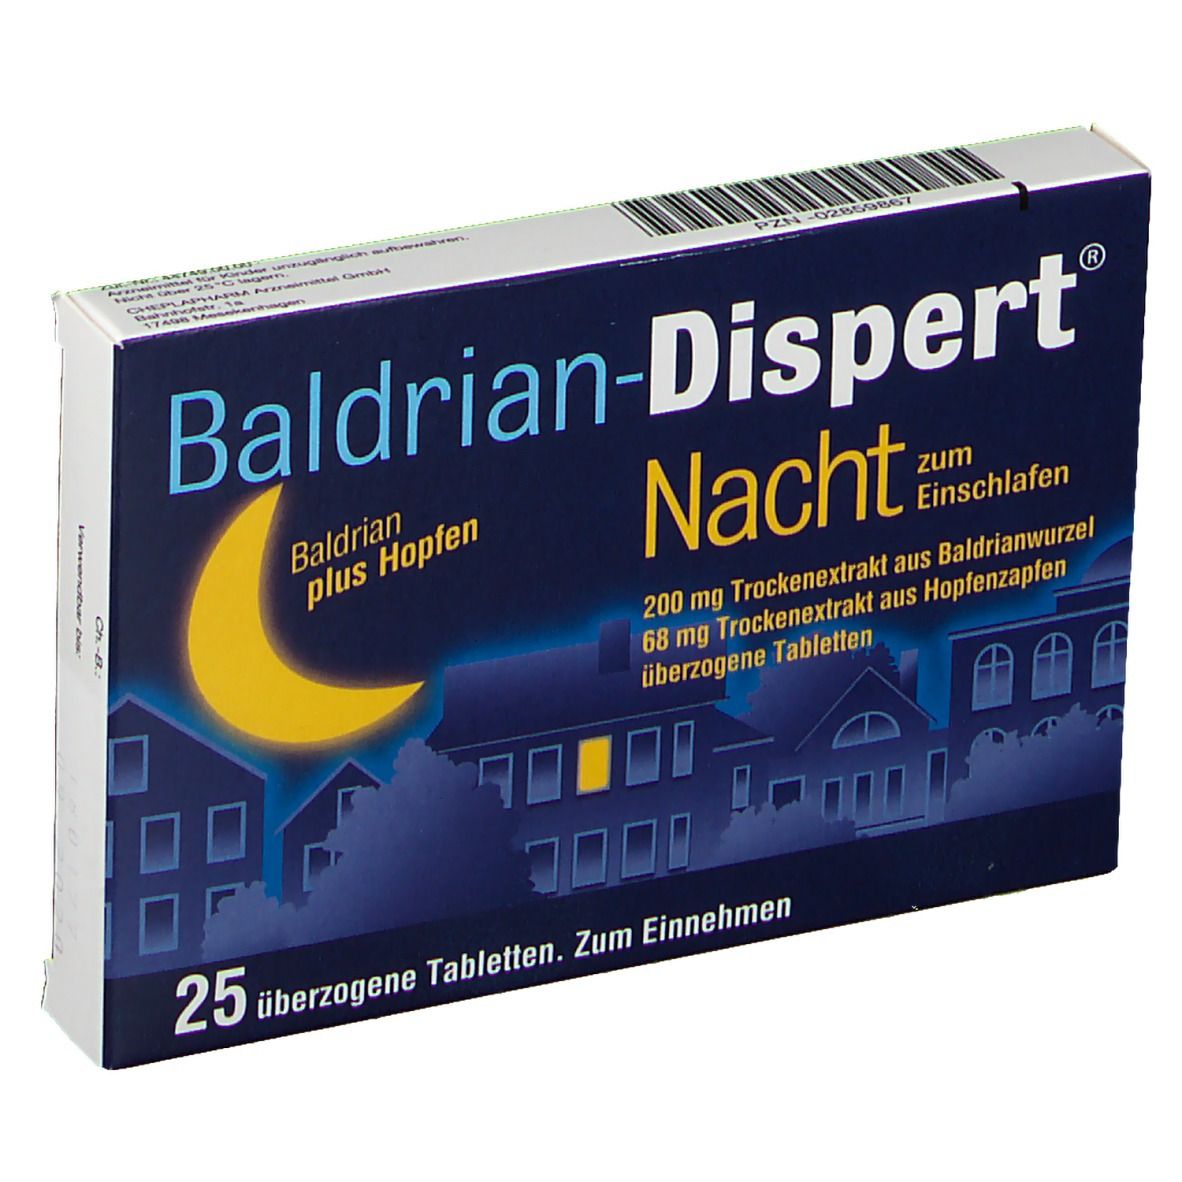 Baldrian-Dispert® Nacht